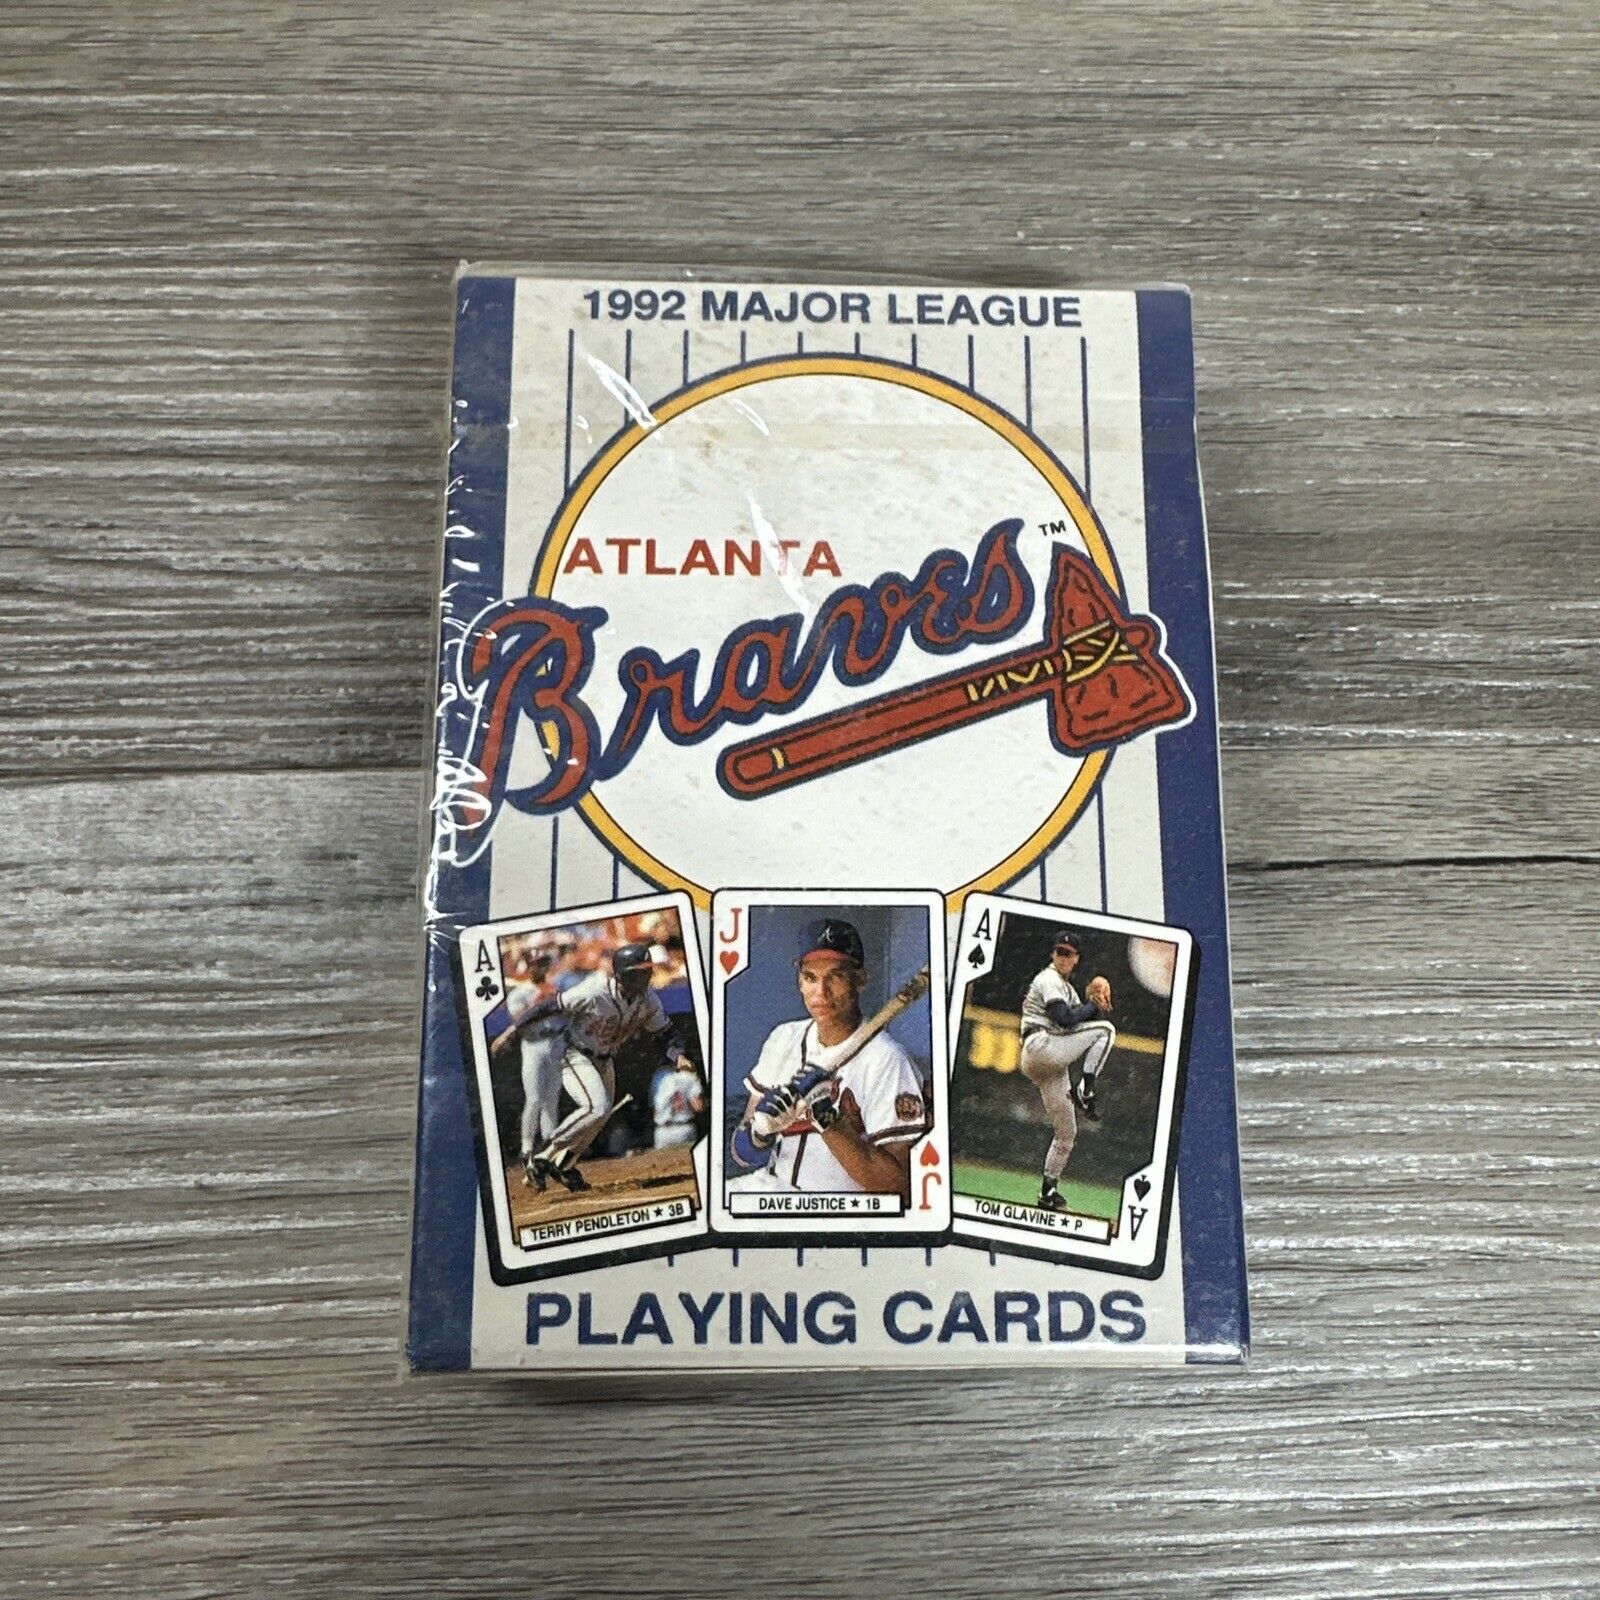 1992 Major League Baseball Atlanta brave Playing Cards No.303 Sealed